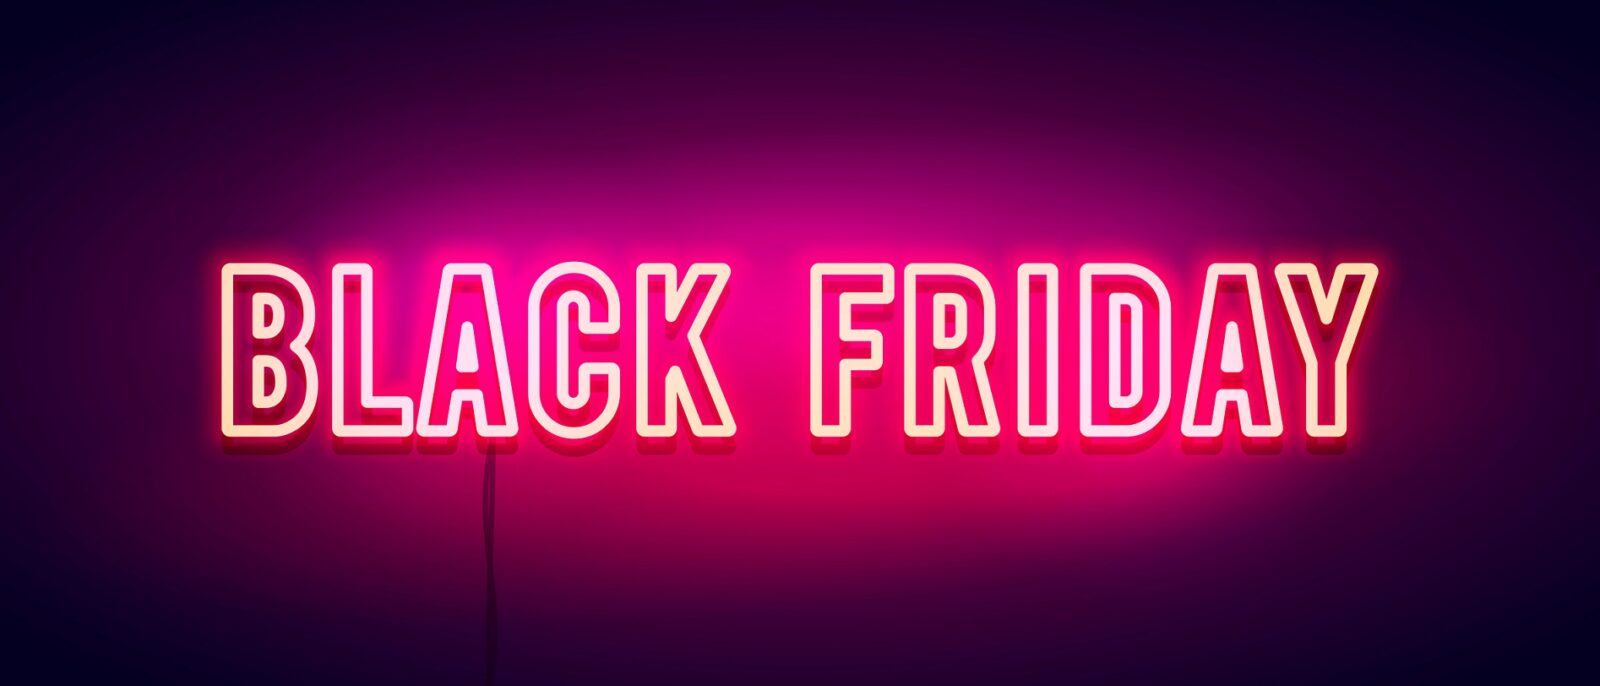 Black Friday: Eine pinke Neonschrift mit dem Schriftzug "Black Friday"